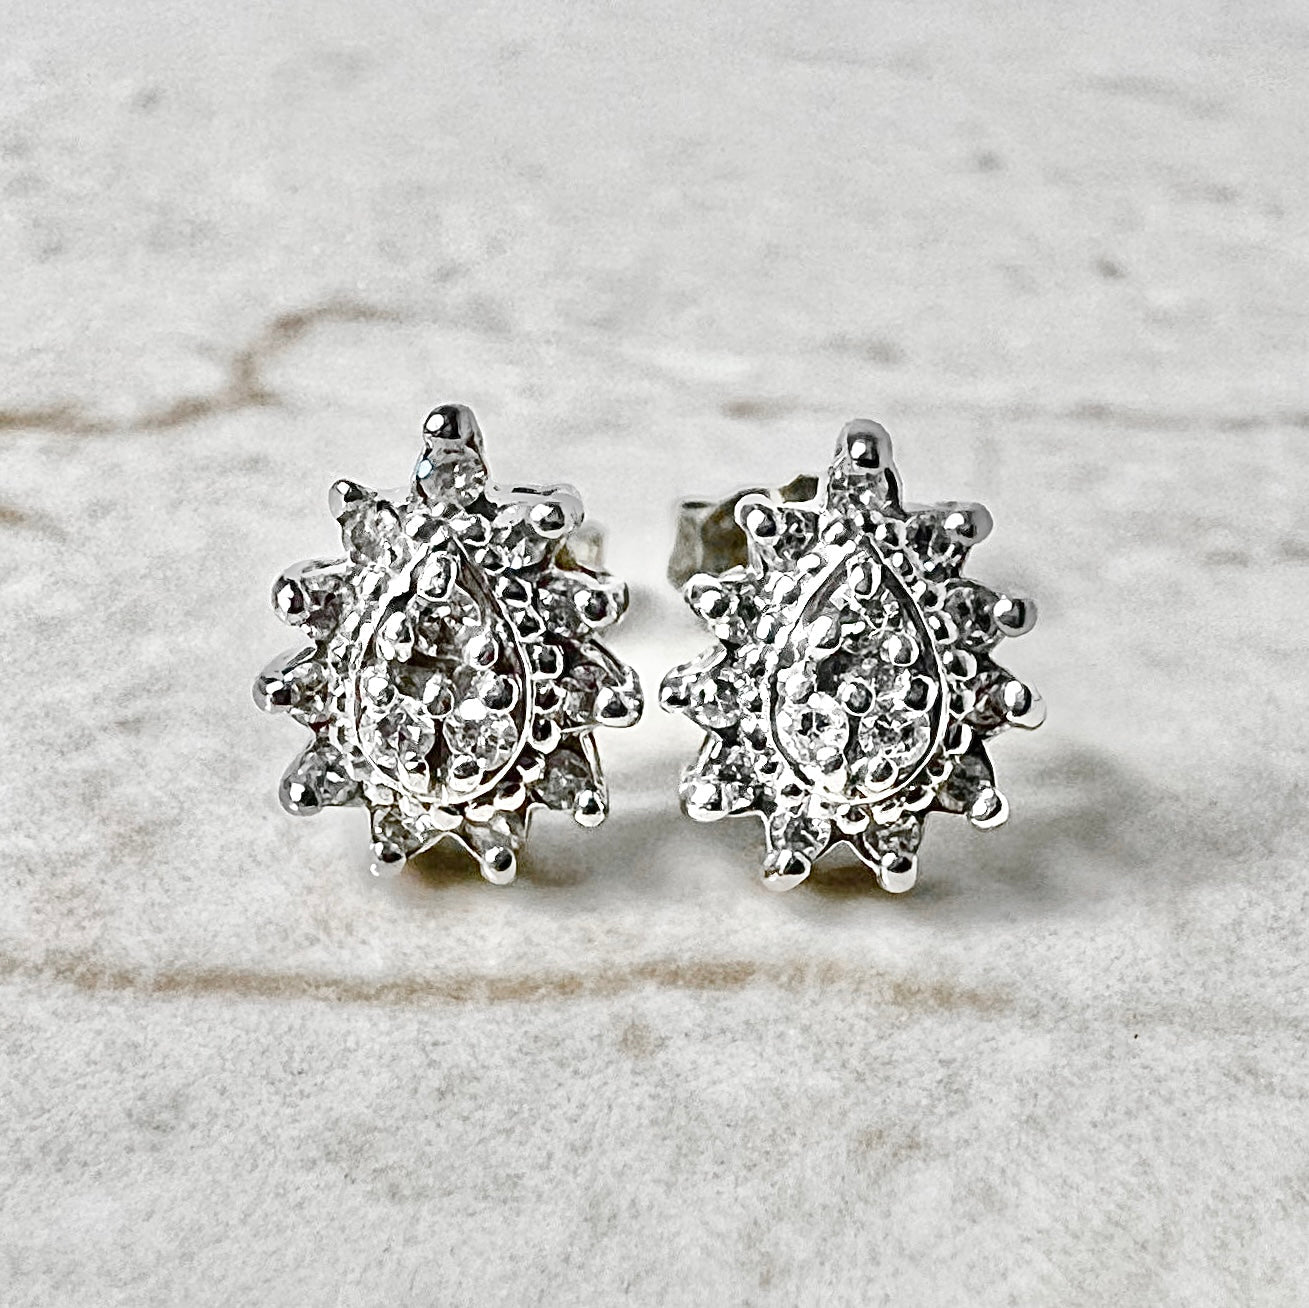 CLEARANCE 40% OFF - 14 Karat White Gold Diamond Cluster Stud Earrings - WeilJewelry